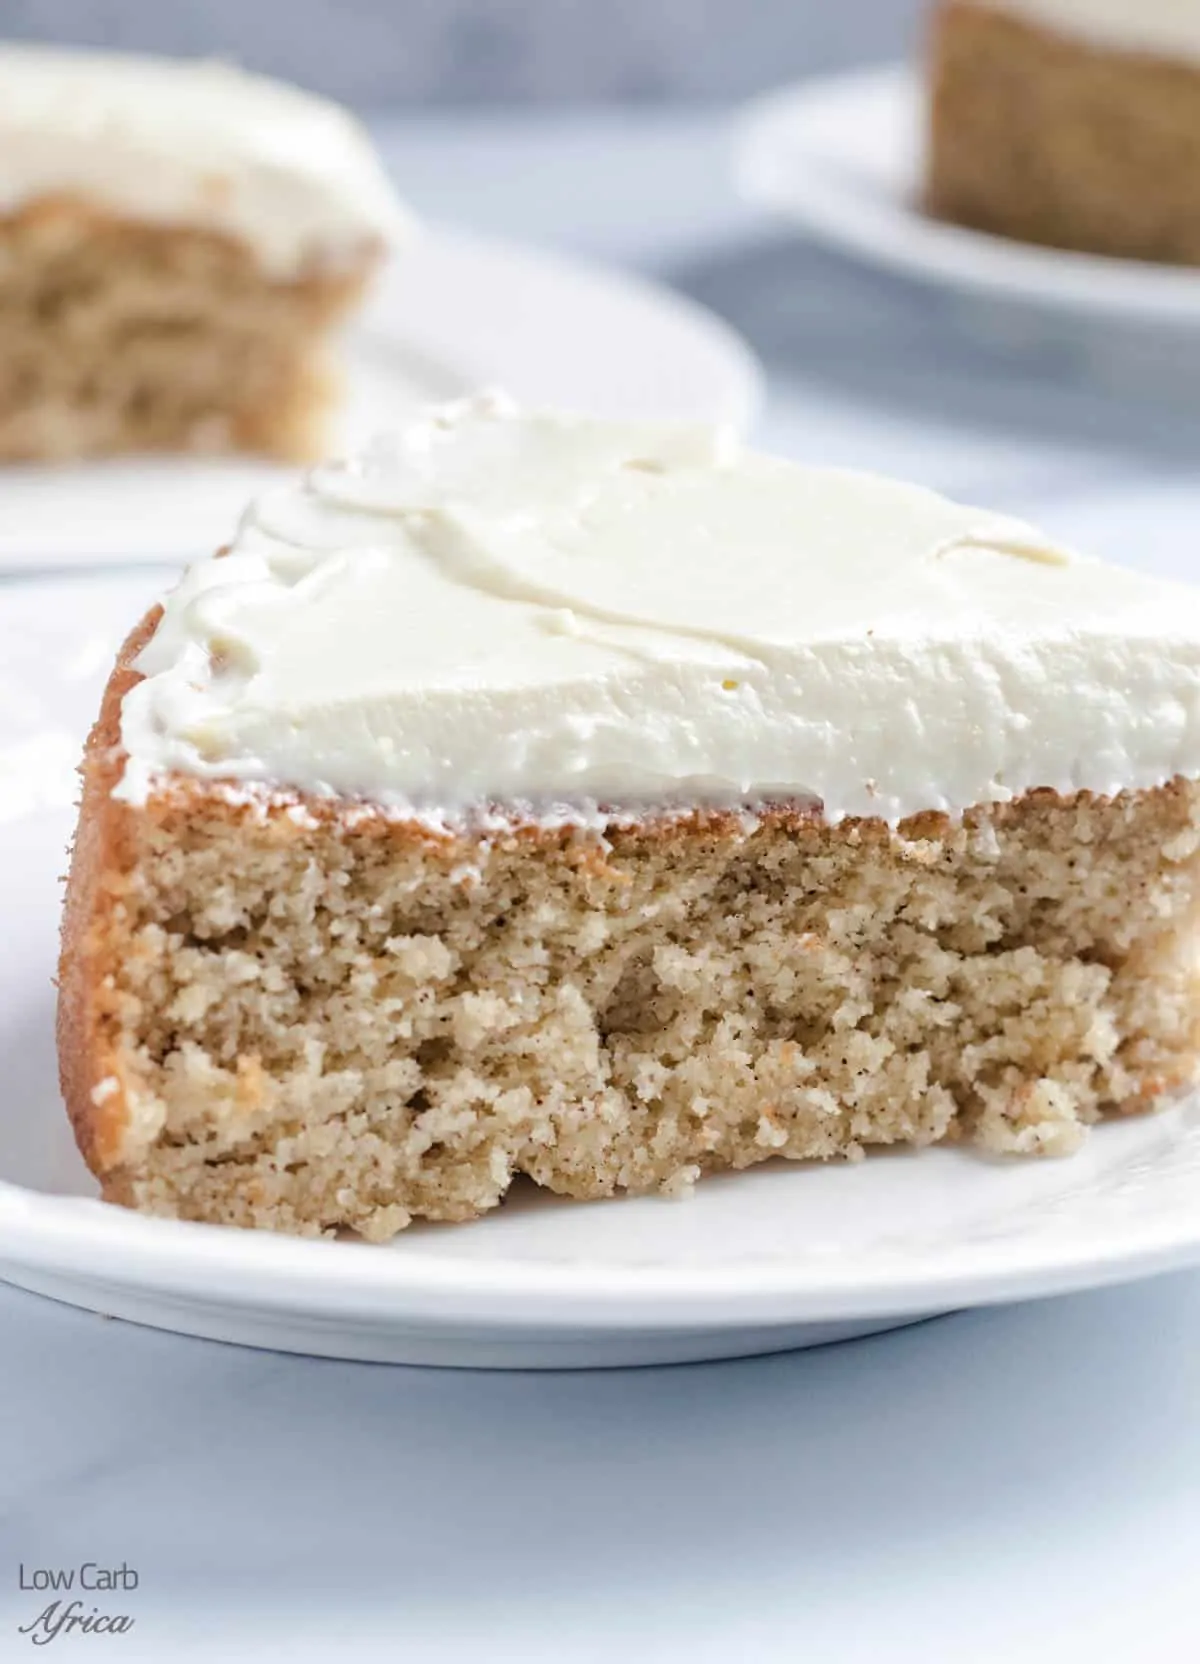 Victoria Sponge Cake Recipe | olivemagazine